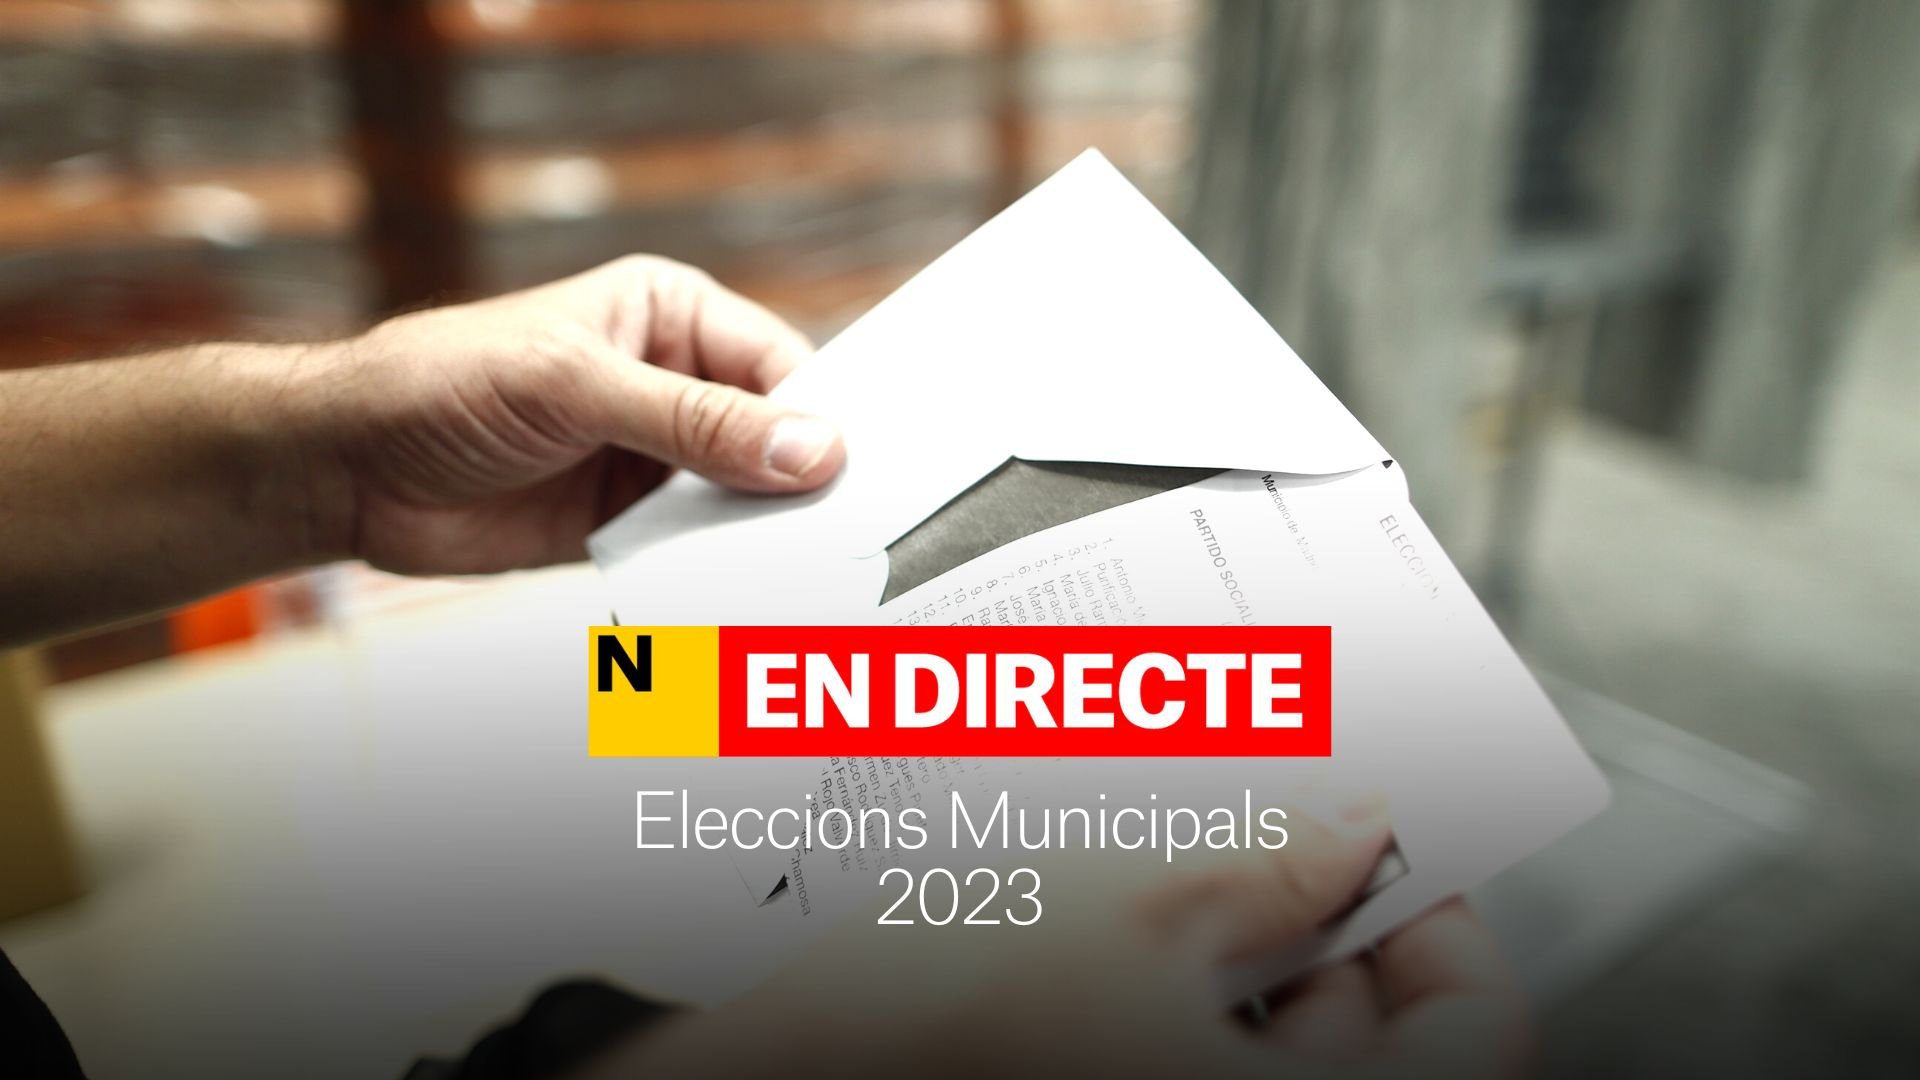 Eleccions municipals 2023 | Últimes notícies del 10 al 16 d'abril